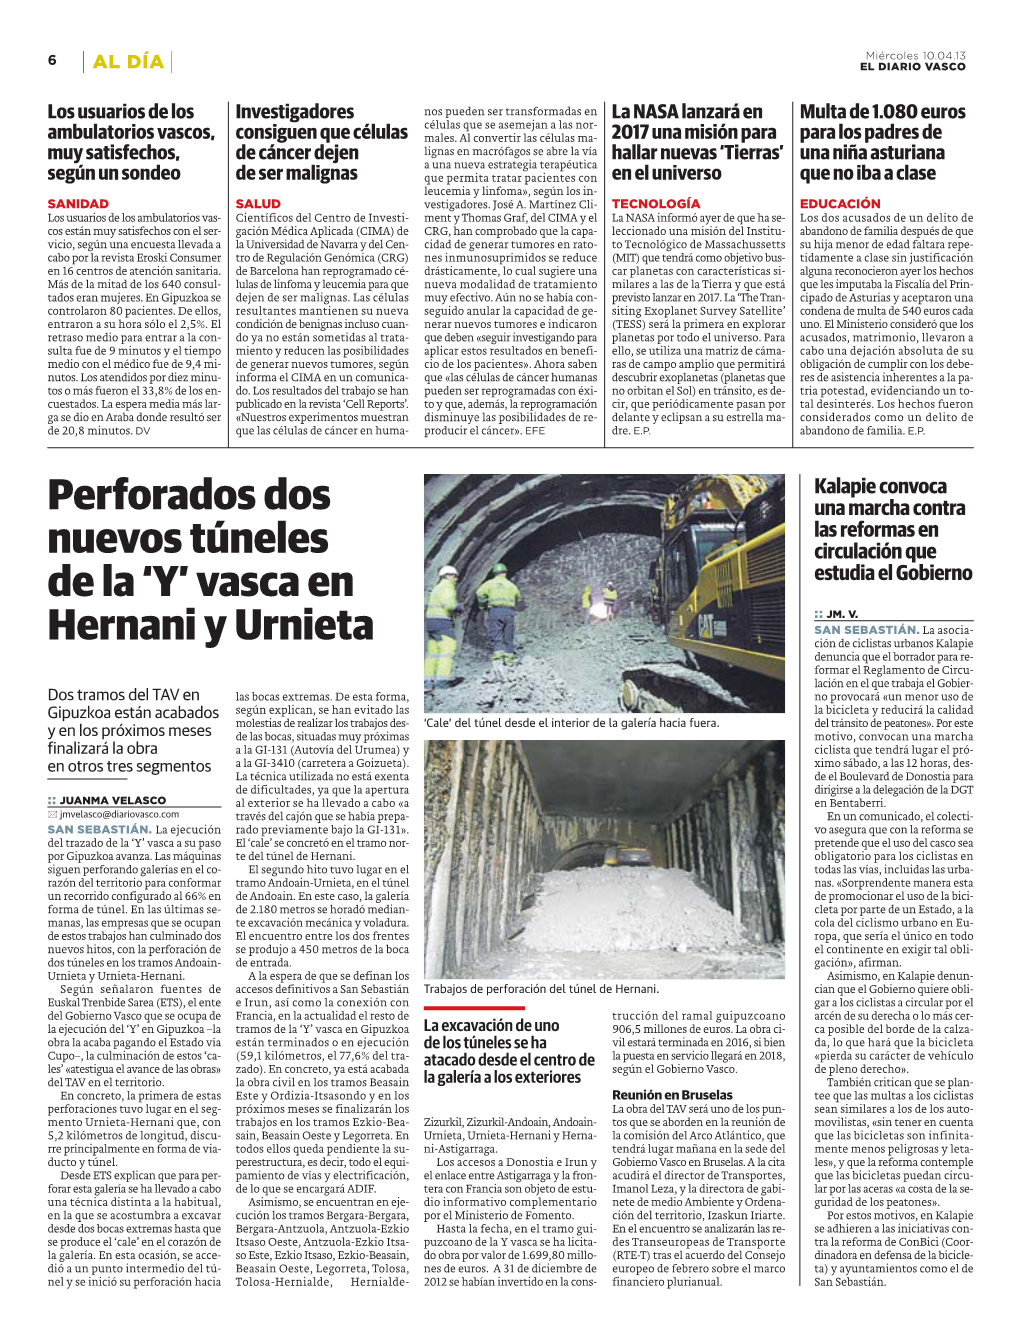 Perforados Dos Nuevos Túneles De La 'Y' Vasca En Hernani Y Urnieta